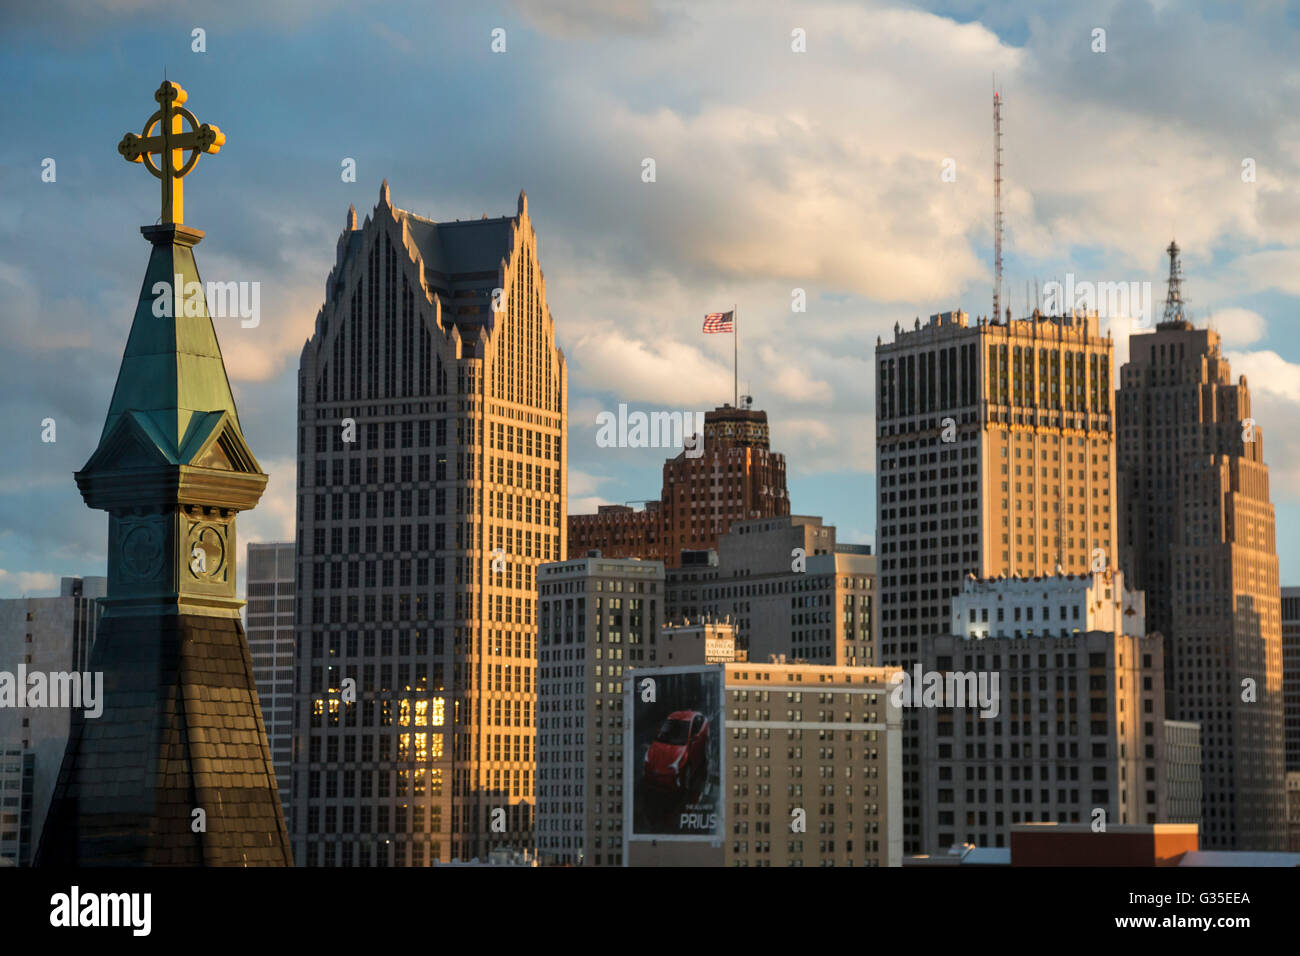 Detroit, Michigan - Centro di Detroit. Il campanile della vecchia Santa Maria la Chiesa cattolica è il primo piano a sinistra. Foto Stock